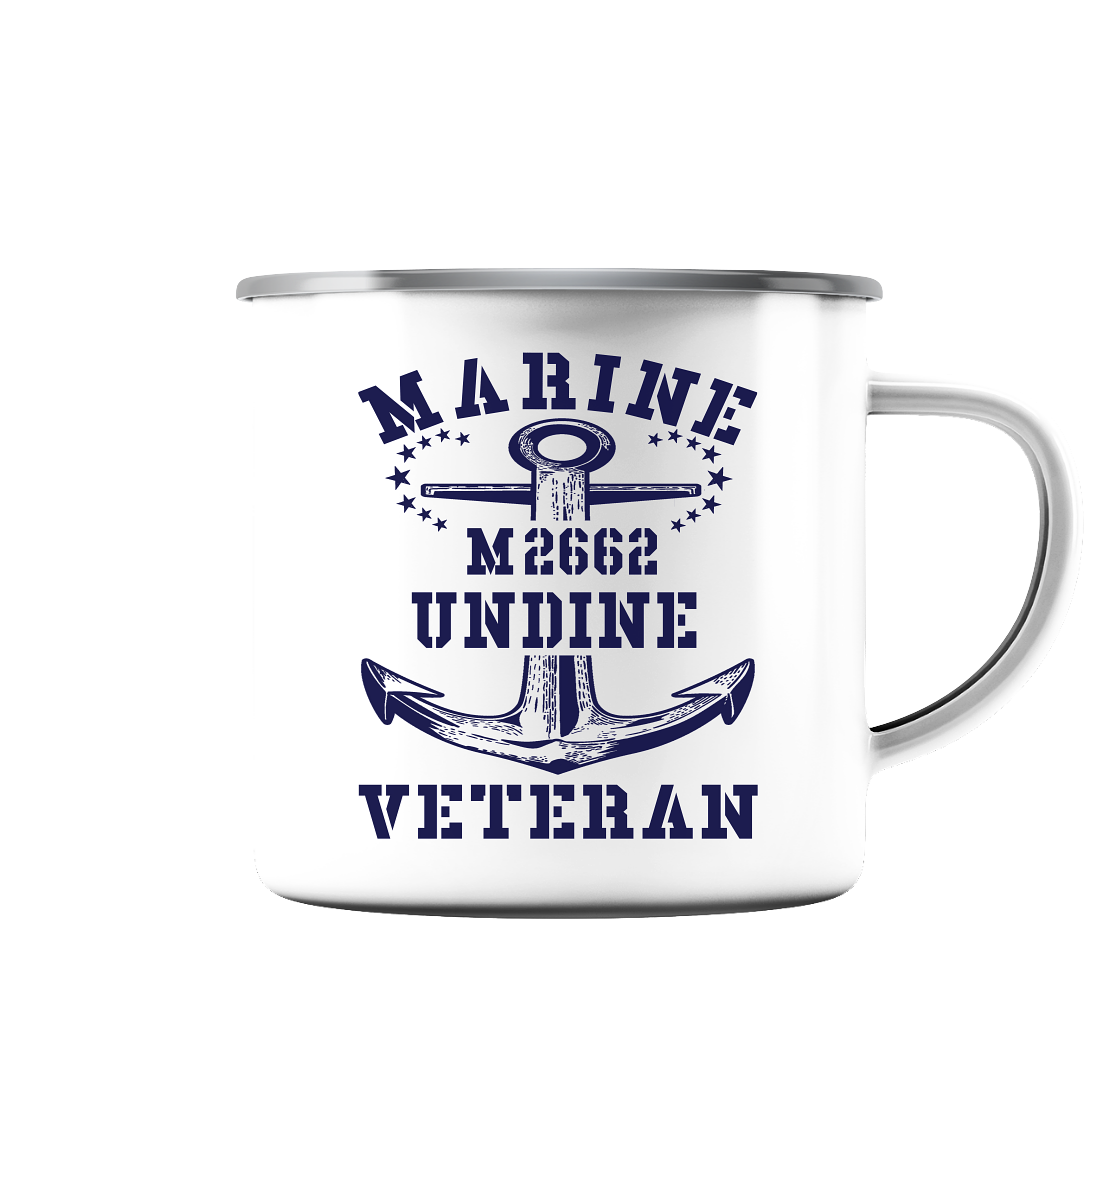 BiMi M2662 UNDINE Marine Veteran - Emaille Tasse (Silber)